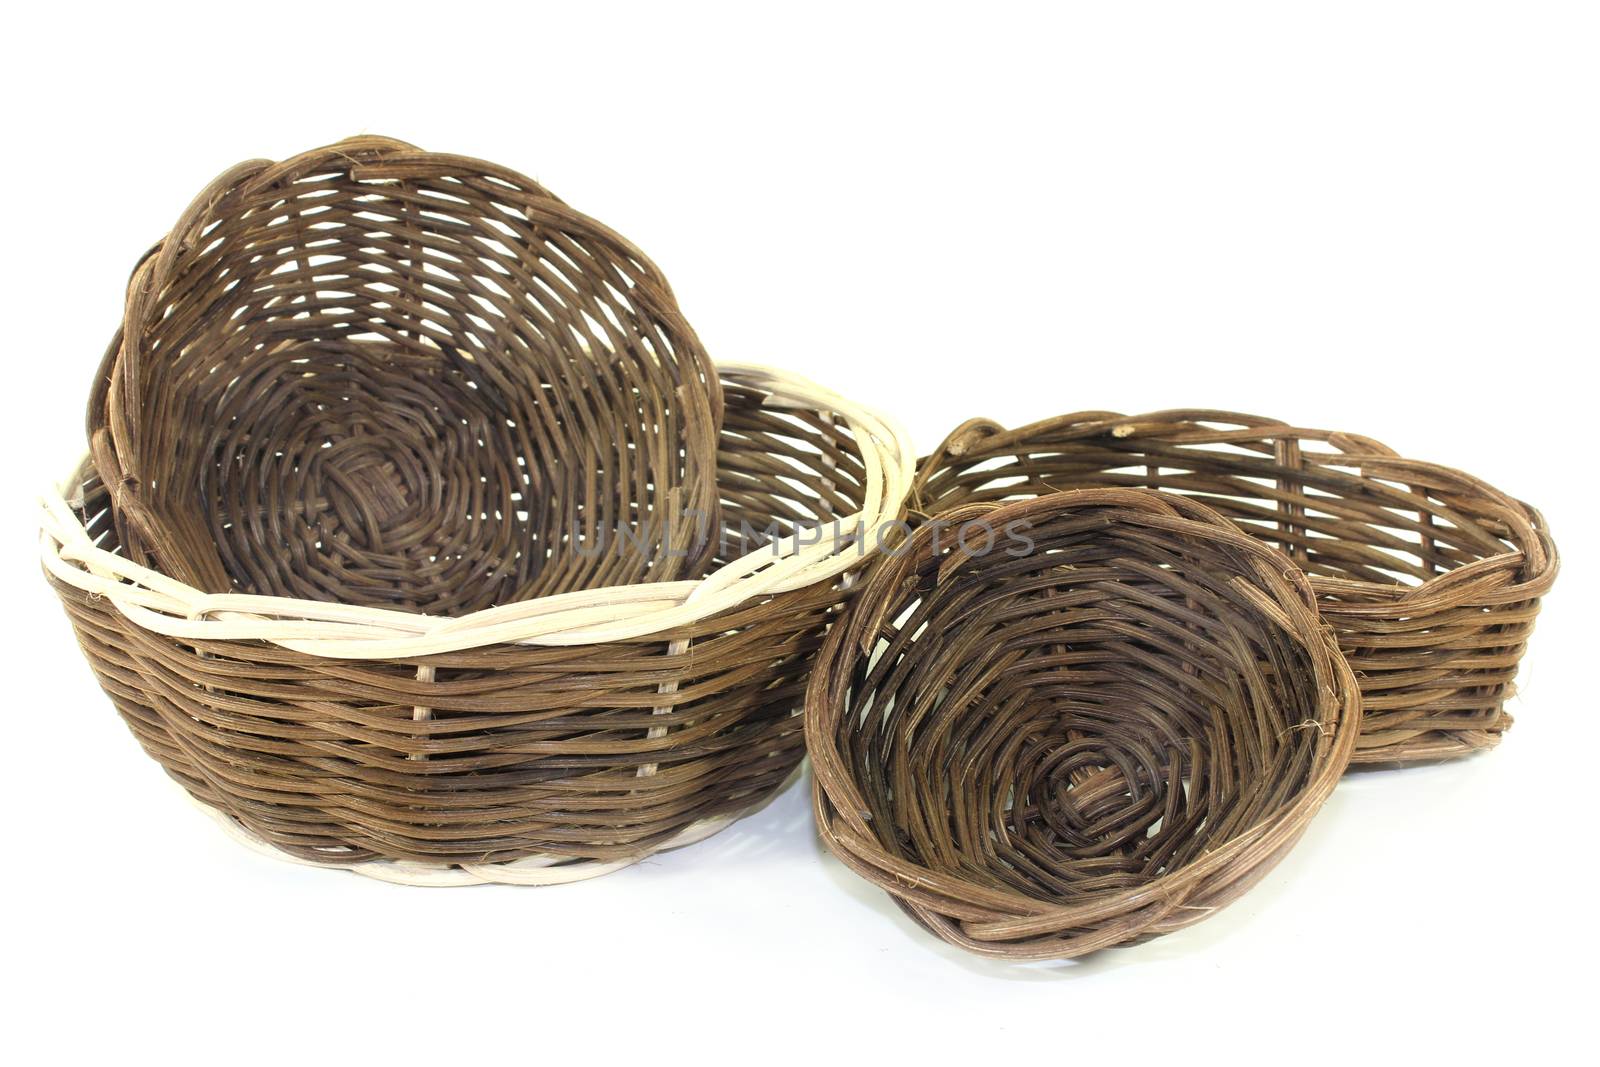 wicker baskets by silencefoto